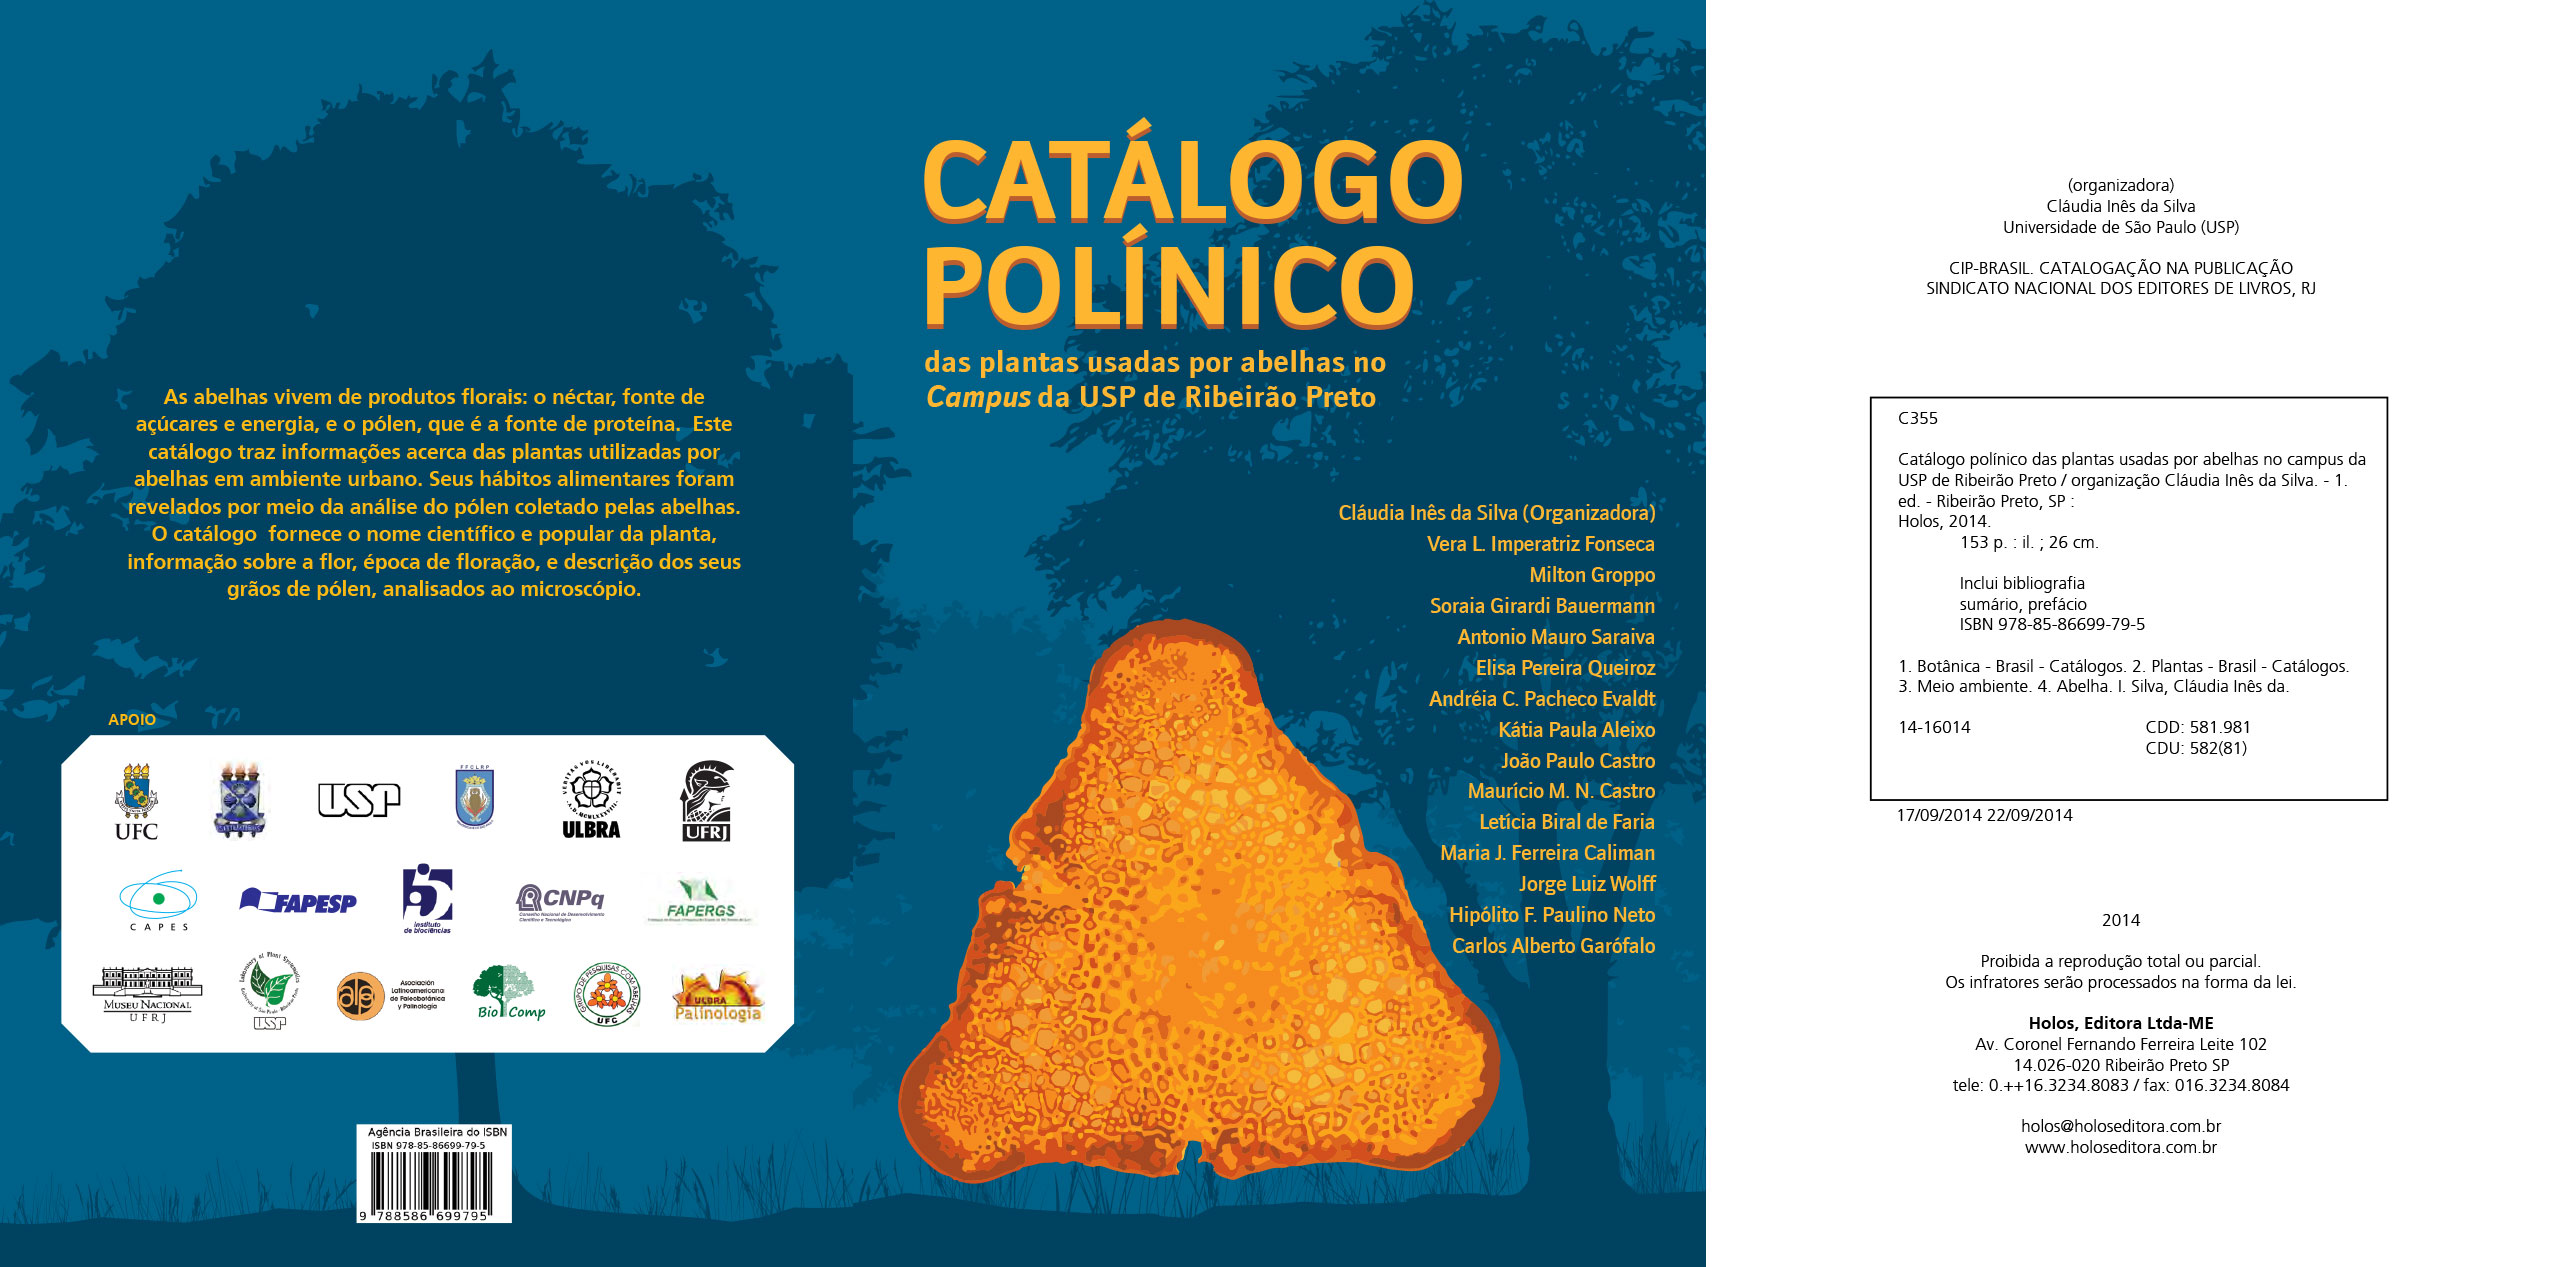 Catálogo Polínico das plantas usadas por abelhas no Campus da USP de Ribeirão Preto